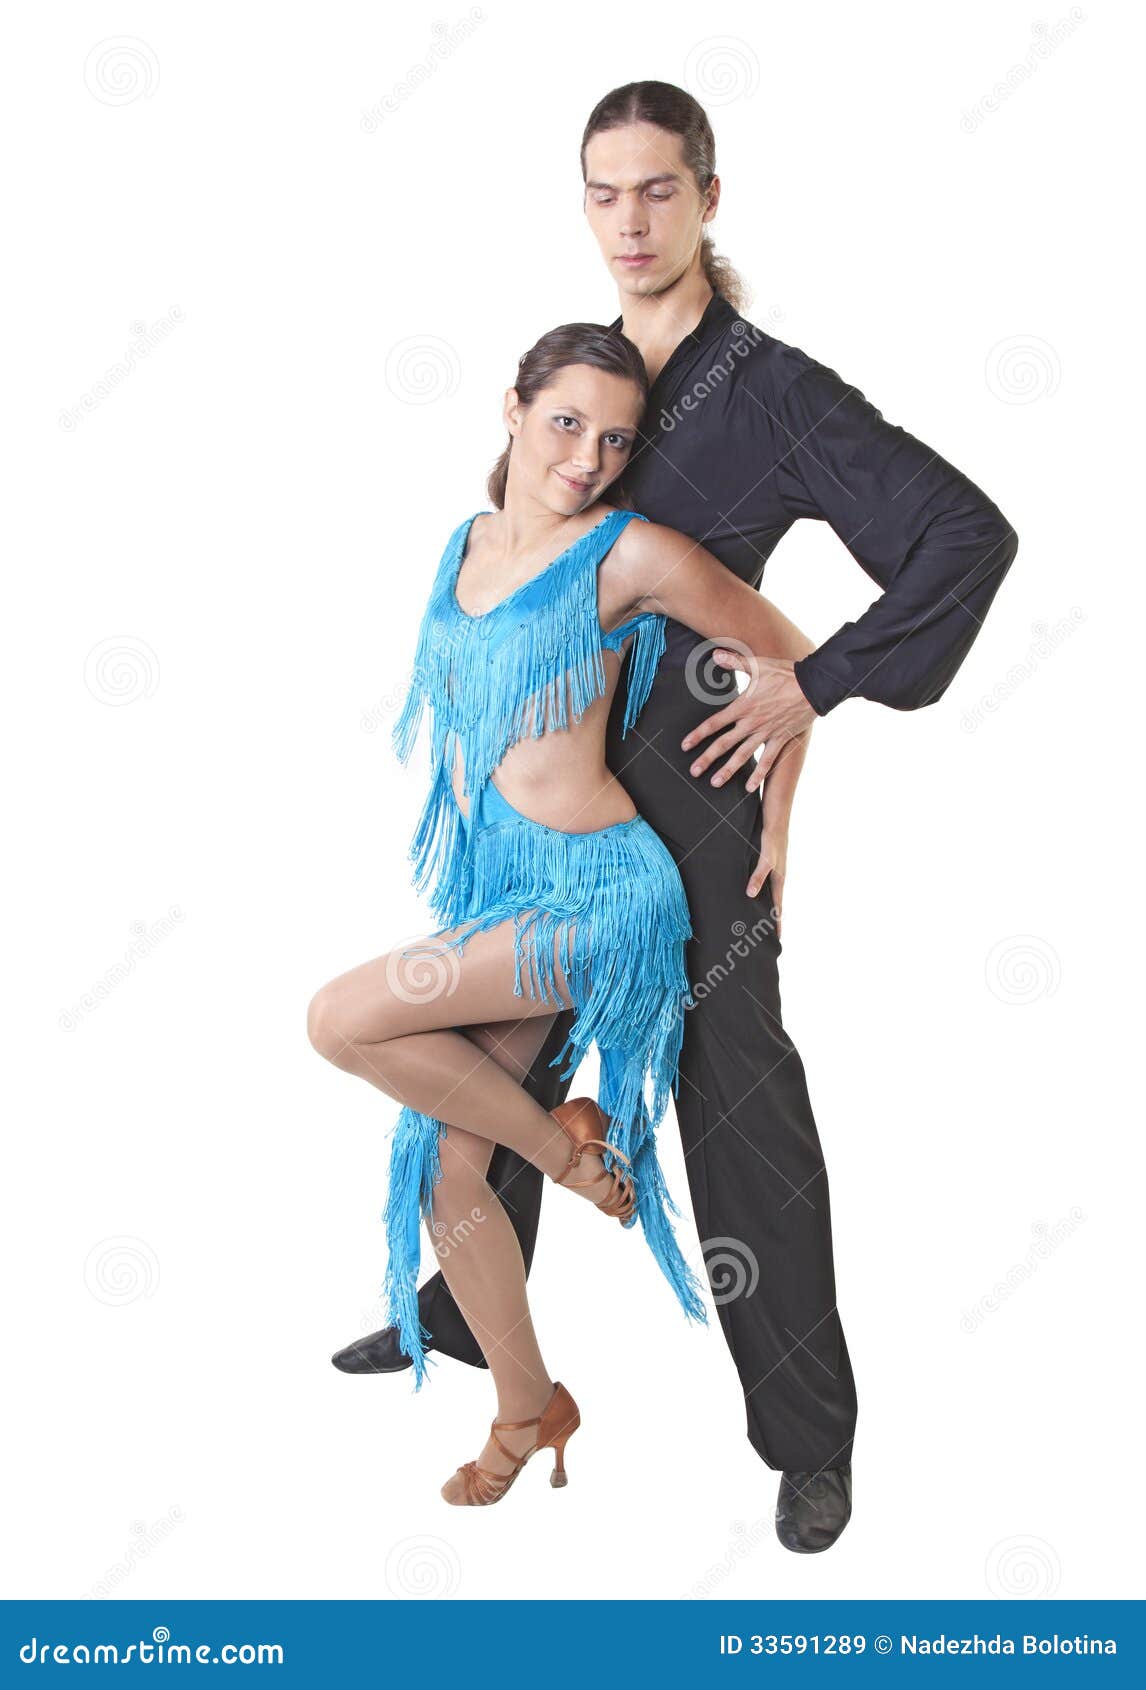 dancing couple